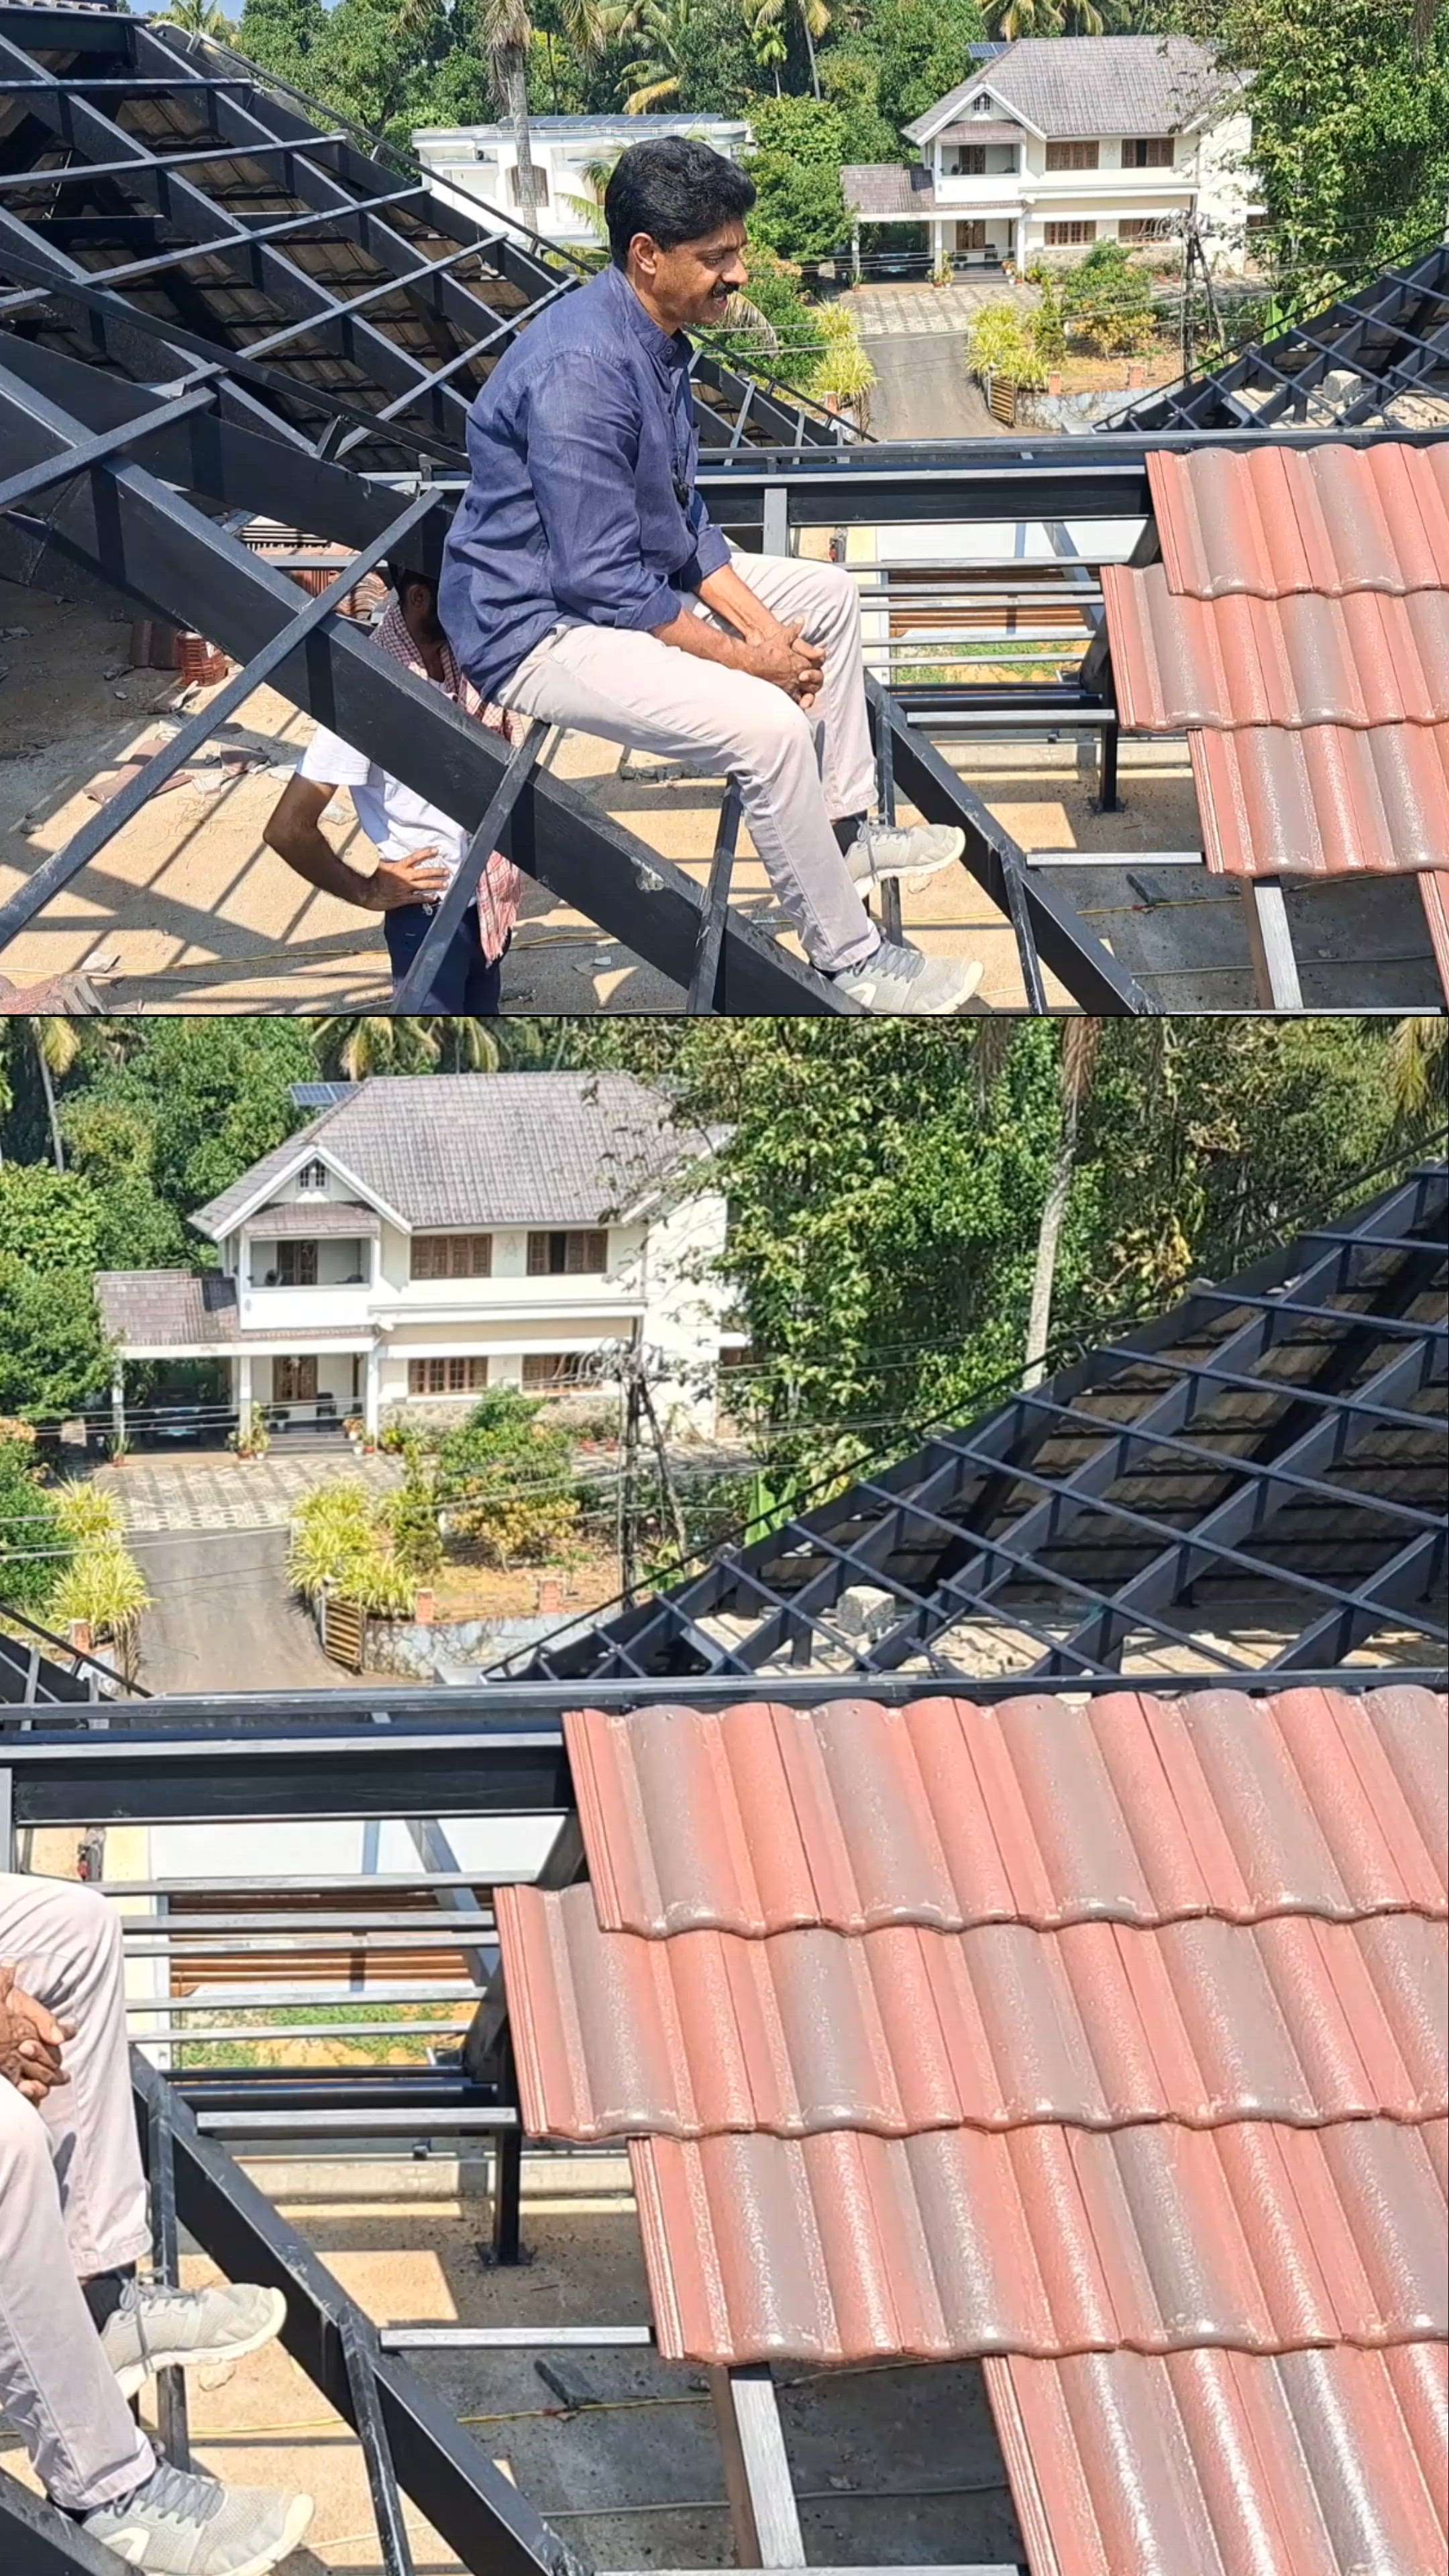 ഇത് അറിഞ്ഞില്ലെങ്കിൽ നിങ്ങളുടെ റൂഫിങ്ങിനും ഇത് സംഭവിക്കും.

 New Idea and new method in roofing work.

Contact :-
@skyfortroofing

🌏 www.skyfortroofing.com

📞98471 90501

 -94967 69501

  9072310416 (Office)

📩info@skyfortroofing.com

#roofing #rooftop #roofing contractor #roofingcompany #roofingservices #roofingsolutions #roofingkerala #ernakulam #kochi #perumbavoor #kerlaroof #keralaroofing #keralanewhome #newconstructionhomes #newconstruction #keralaconstruction #sky #Skyfort #skyfortroofing #allkerala #all #keraladelivery #alldelivery